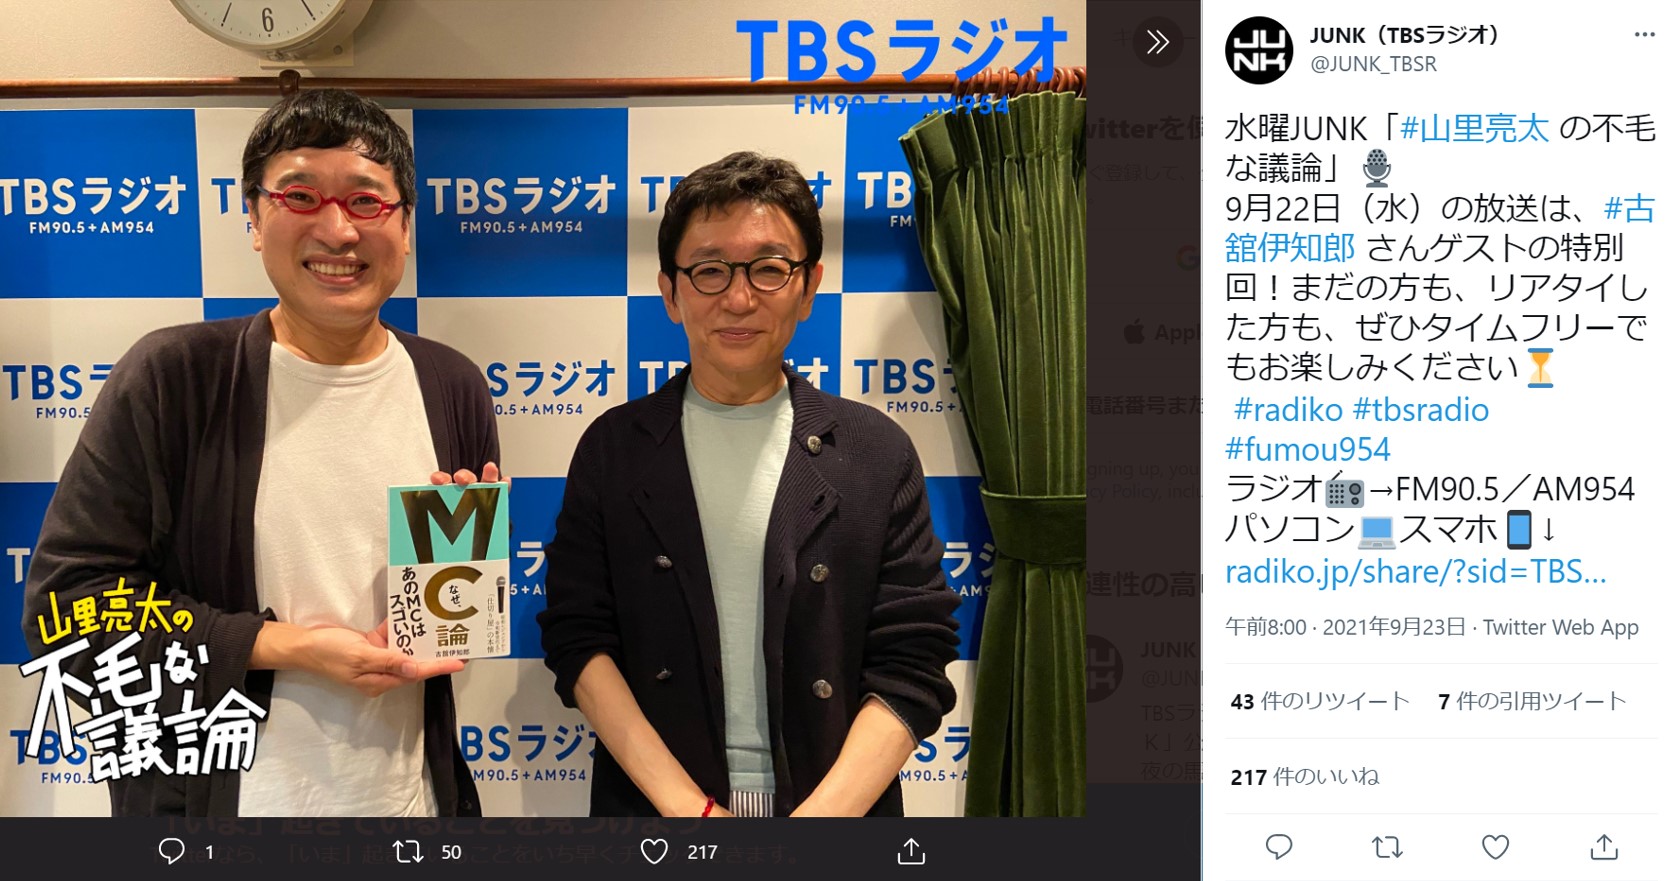 ラジオ番組で共演した山里亮太と古舘伊知郎（画像は『JUNK（TBSラジオ）　2021年9月23日付Twitter「水曜JUNK「＃山里亮太 の不毛な議論」」』のスクリーンショット）